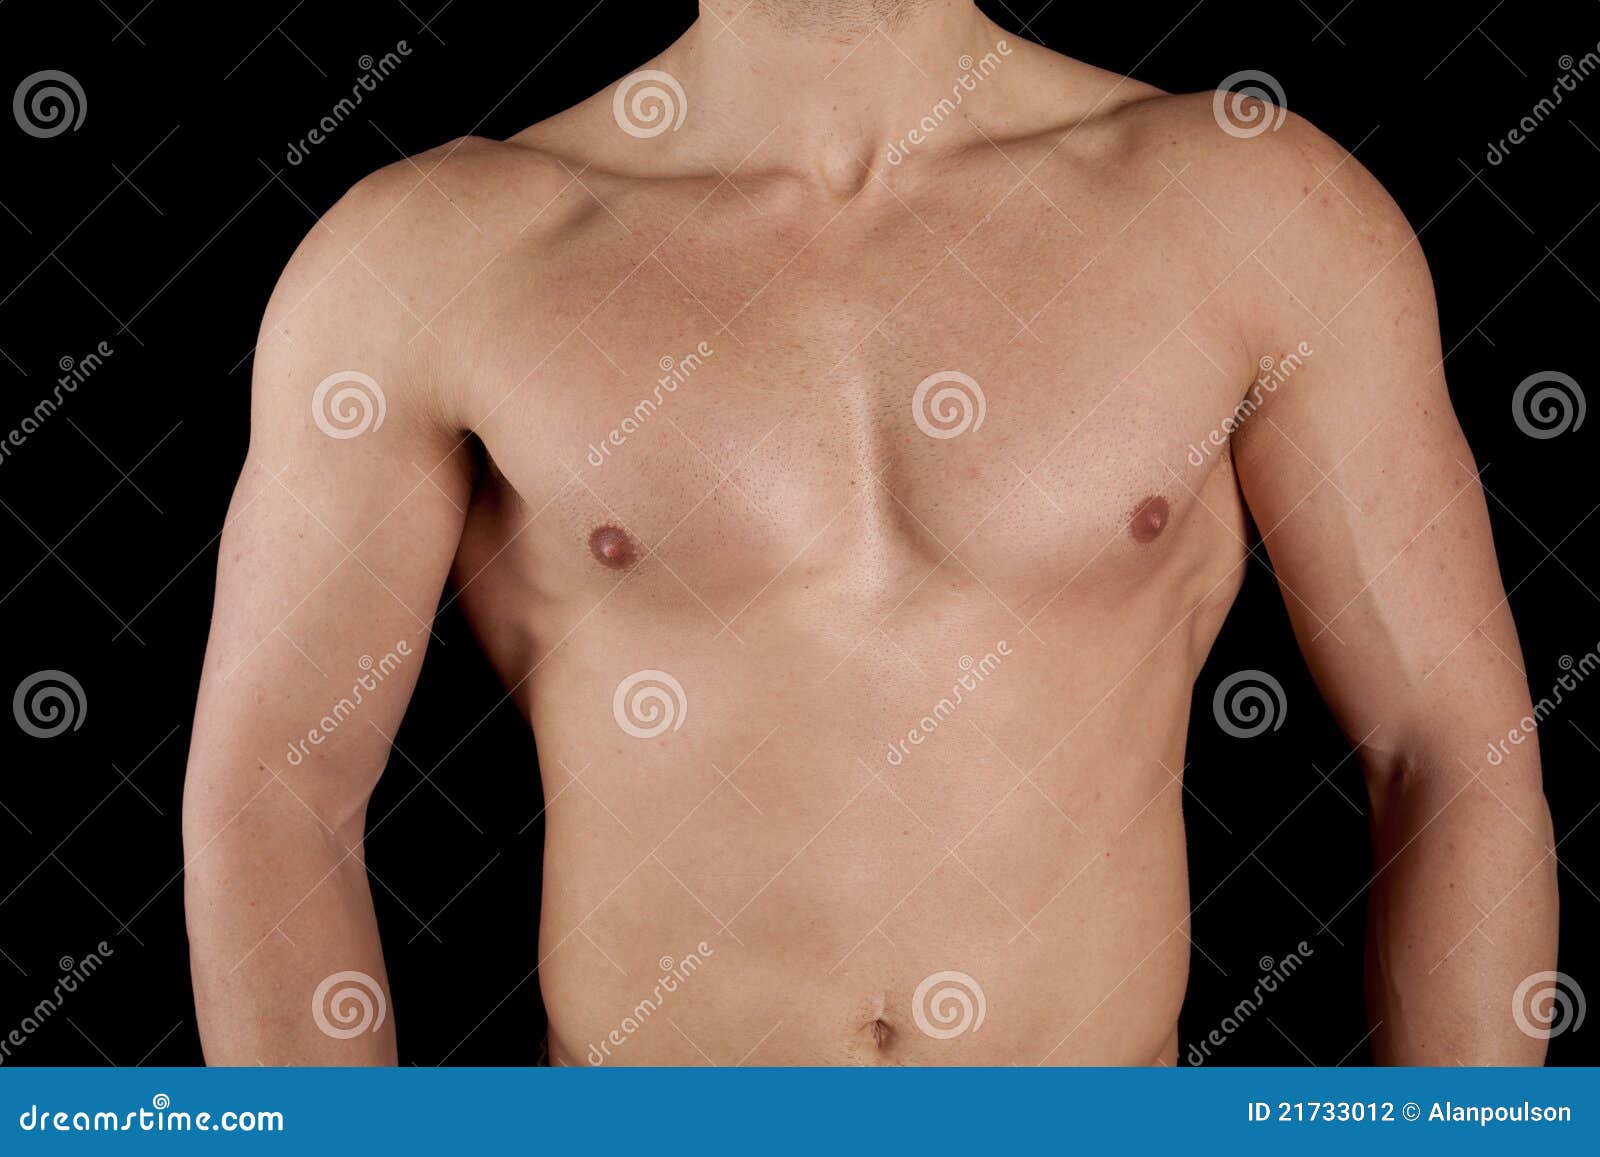 Почему левое больше правого. Выпирание грудной клетки. Ребра мужчины. Мужская грудная клетка сбоку.